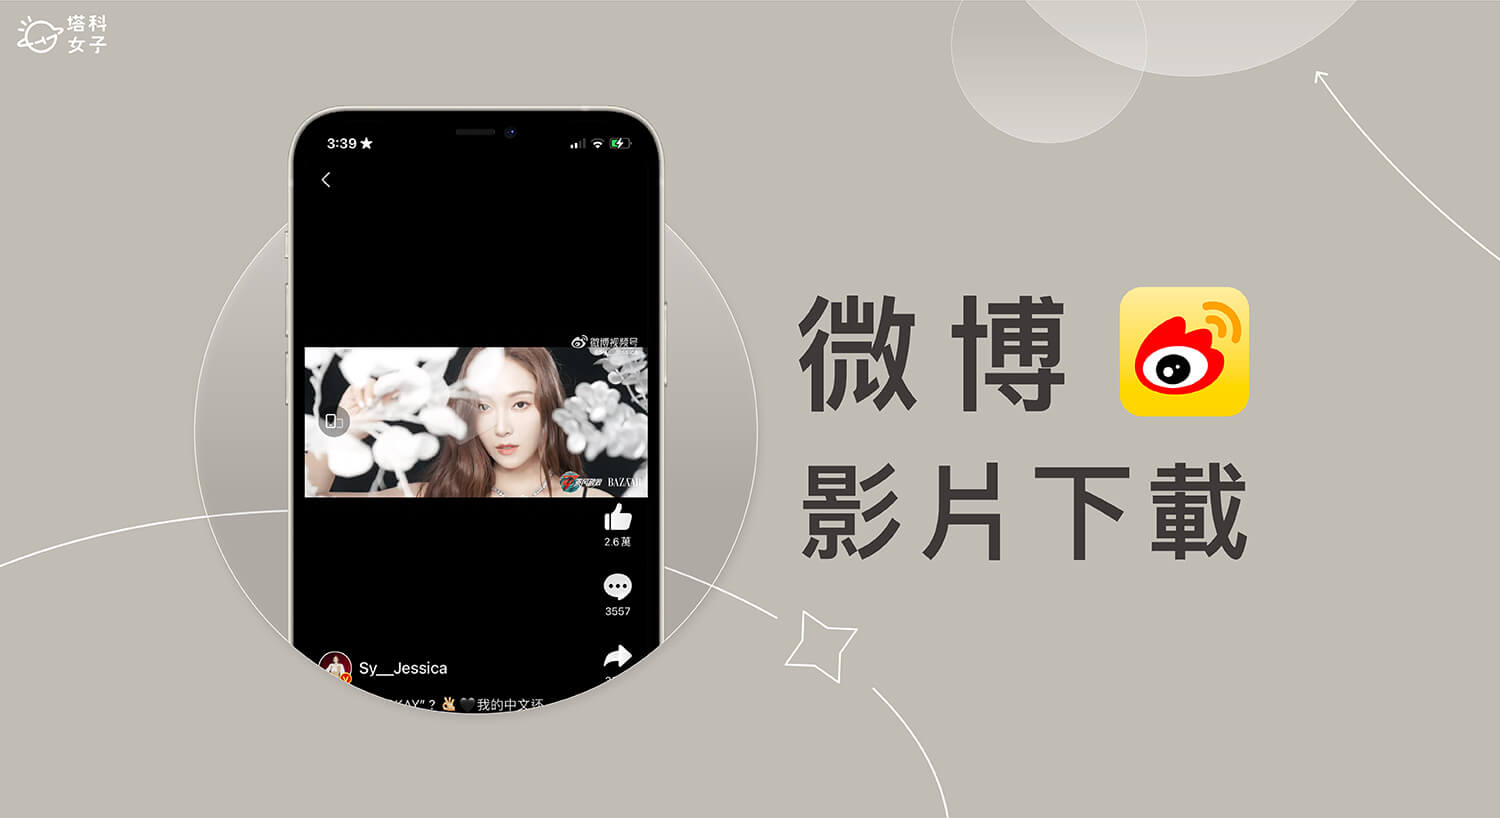 【微博影片下載教學】3 招下載 Weibo 影片到手機或電腦